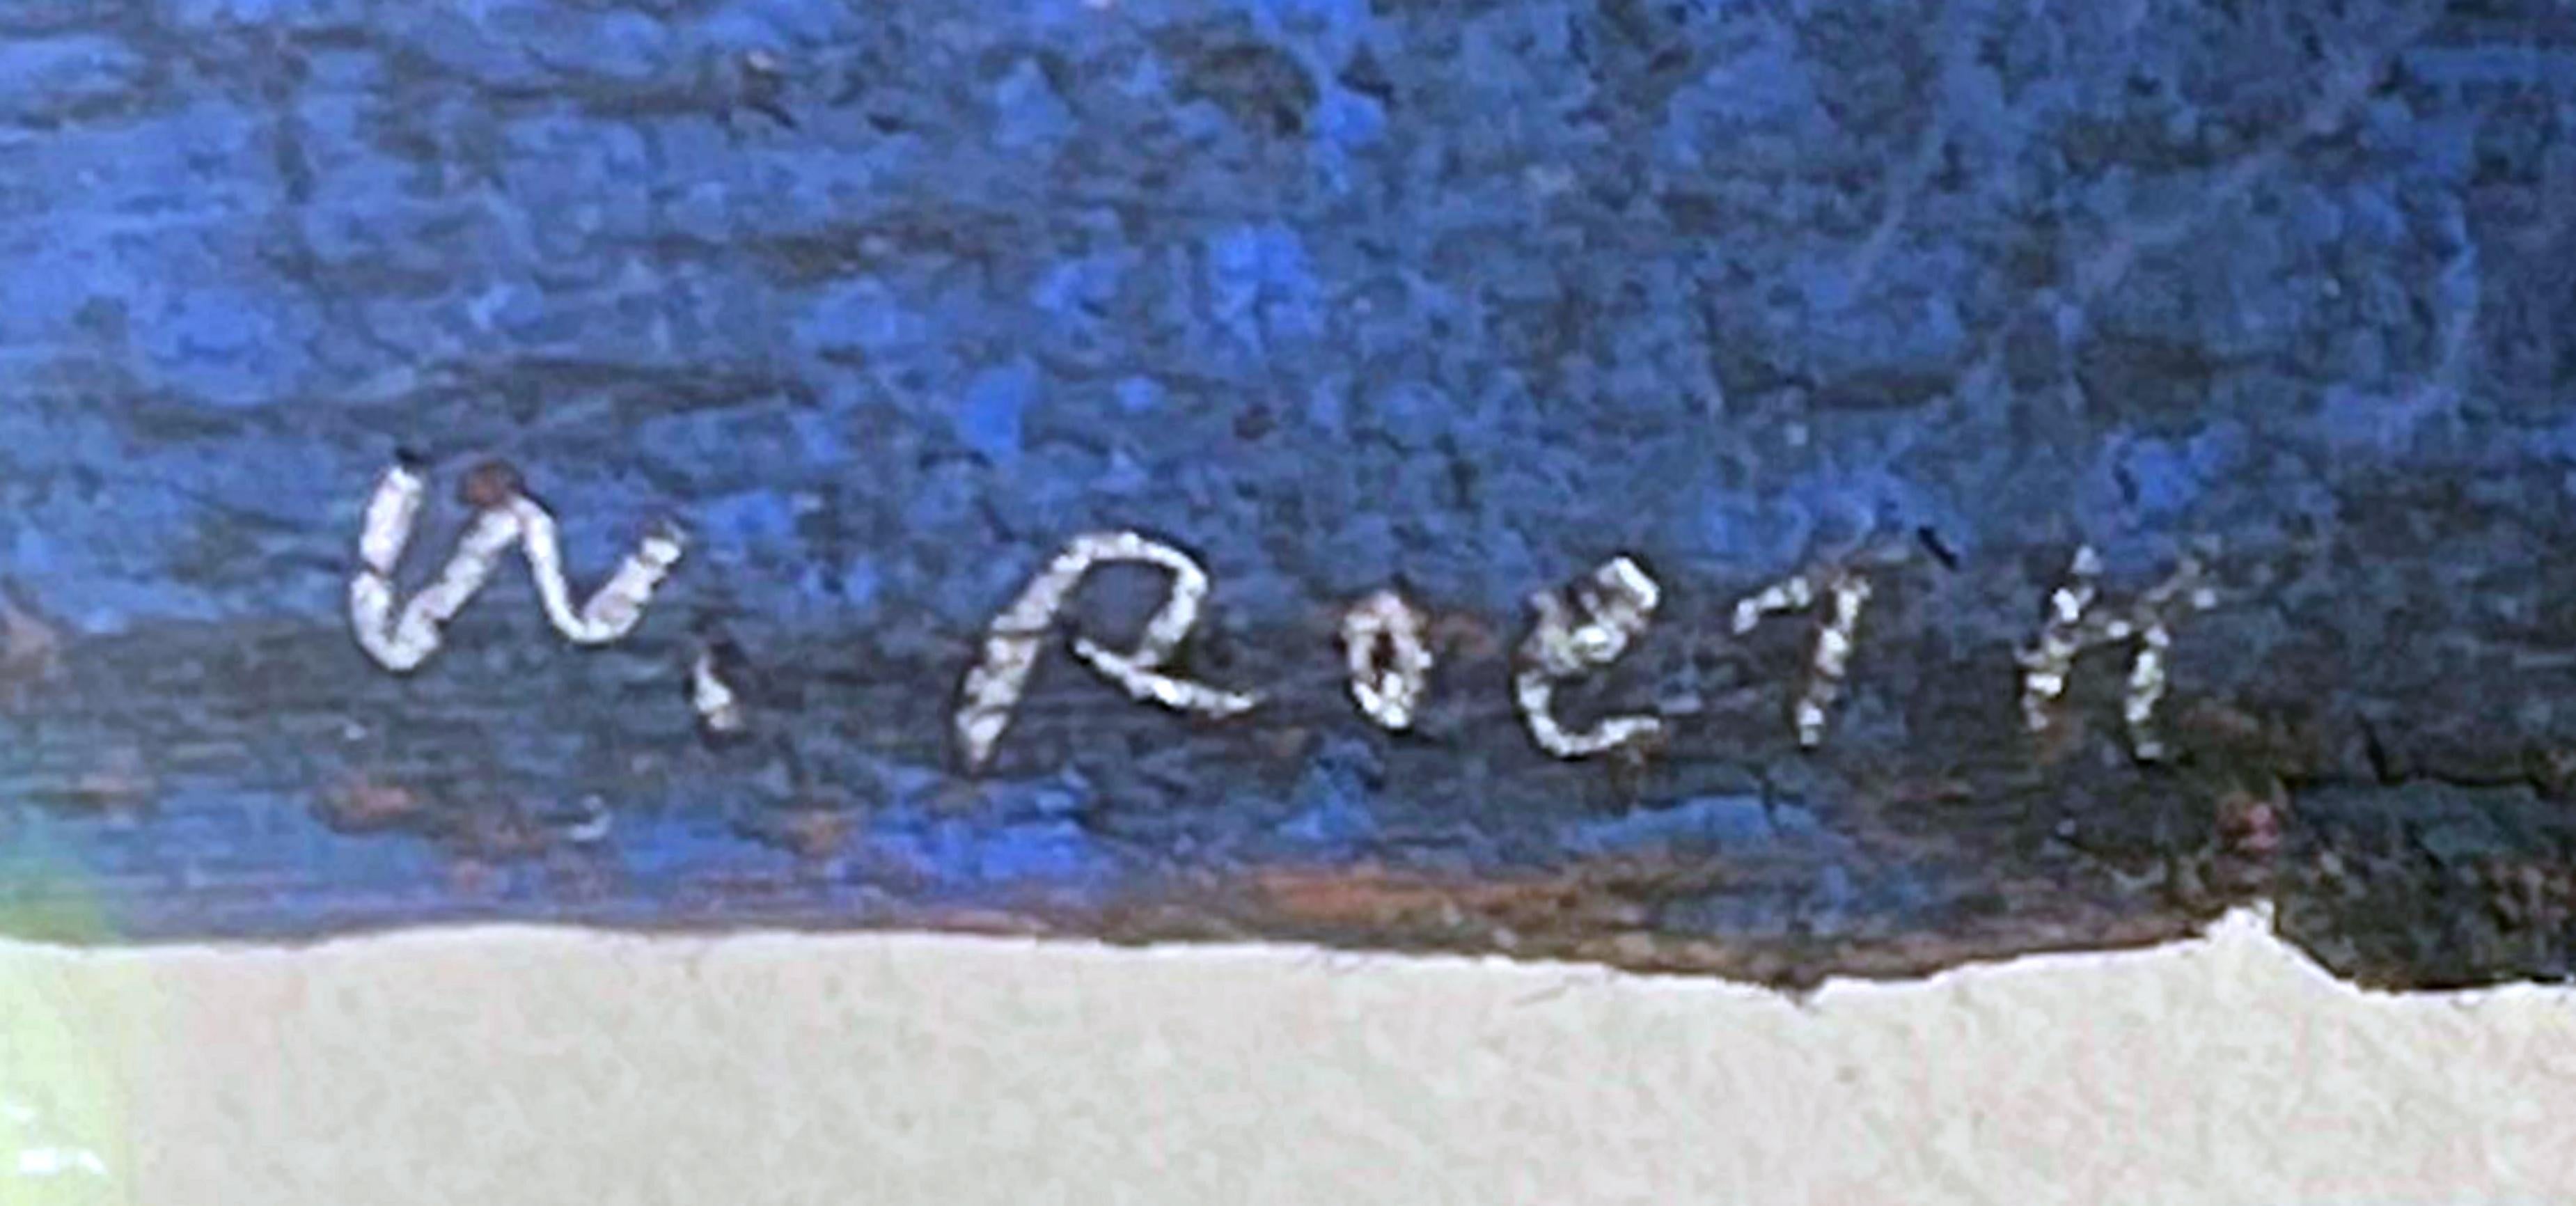 Une œuvre exquise d'abstraction géométrique de cet artiste célèbre.
Winston Roeth
Sans titre, vers 1996
Pastel sur papier fait main
Signé à la main au recto
Cadre inclus : Encadré dans le cadre en bois d'origine avec plexiglas anti-UV.
Mesures